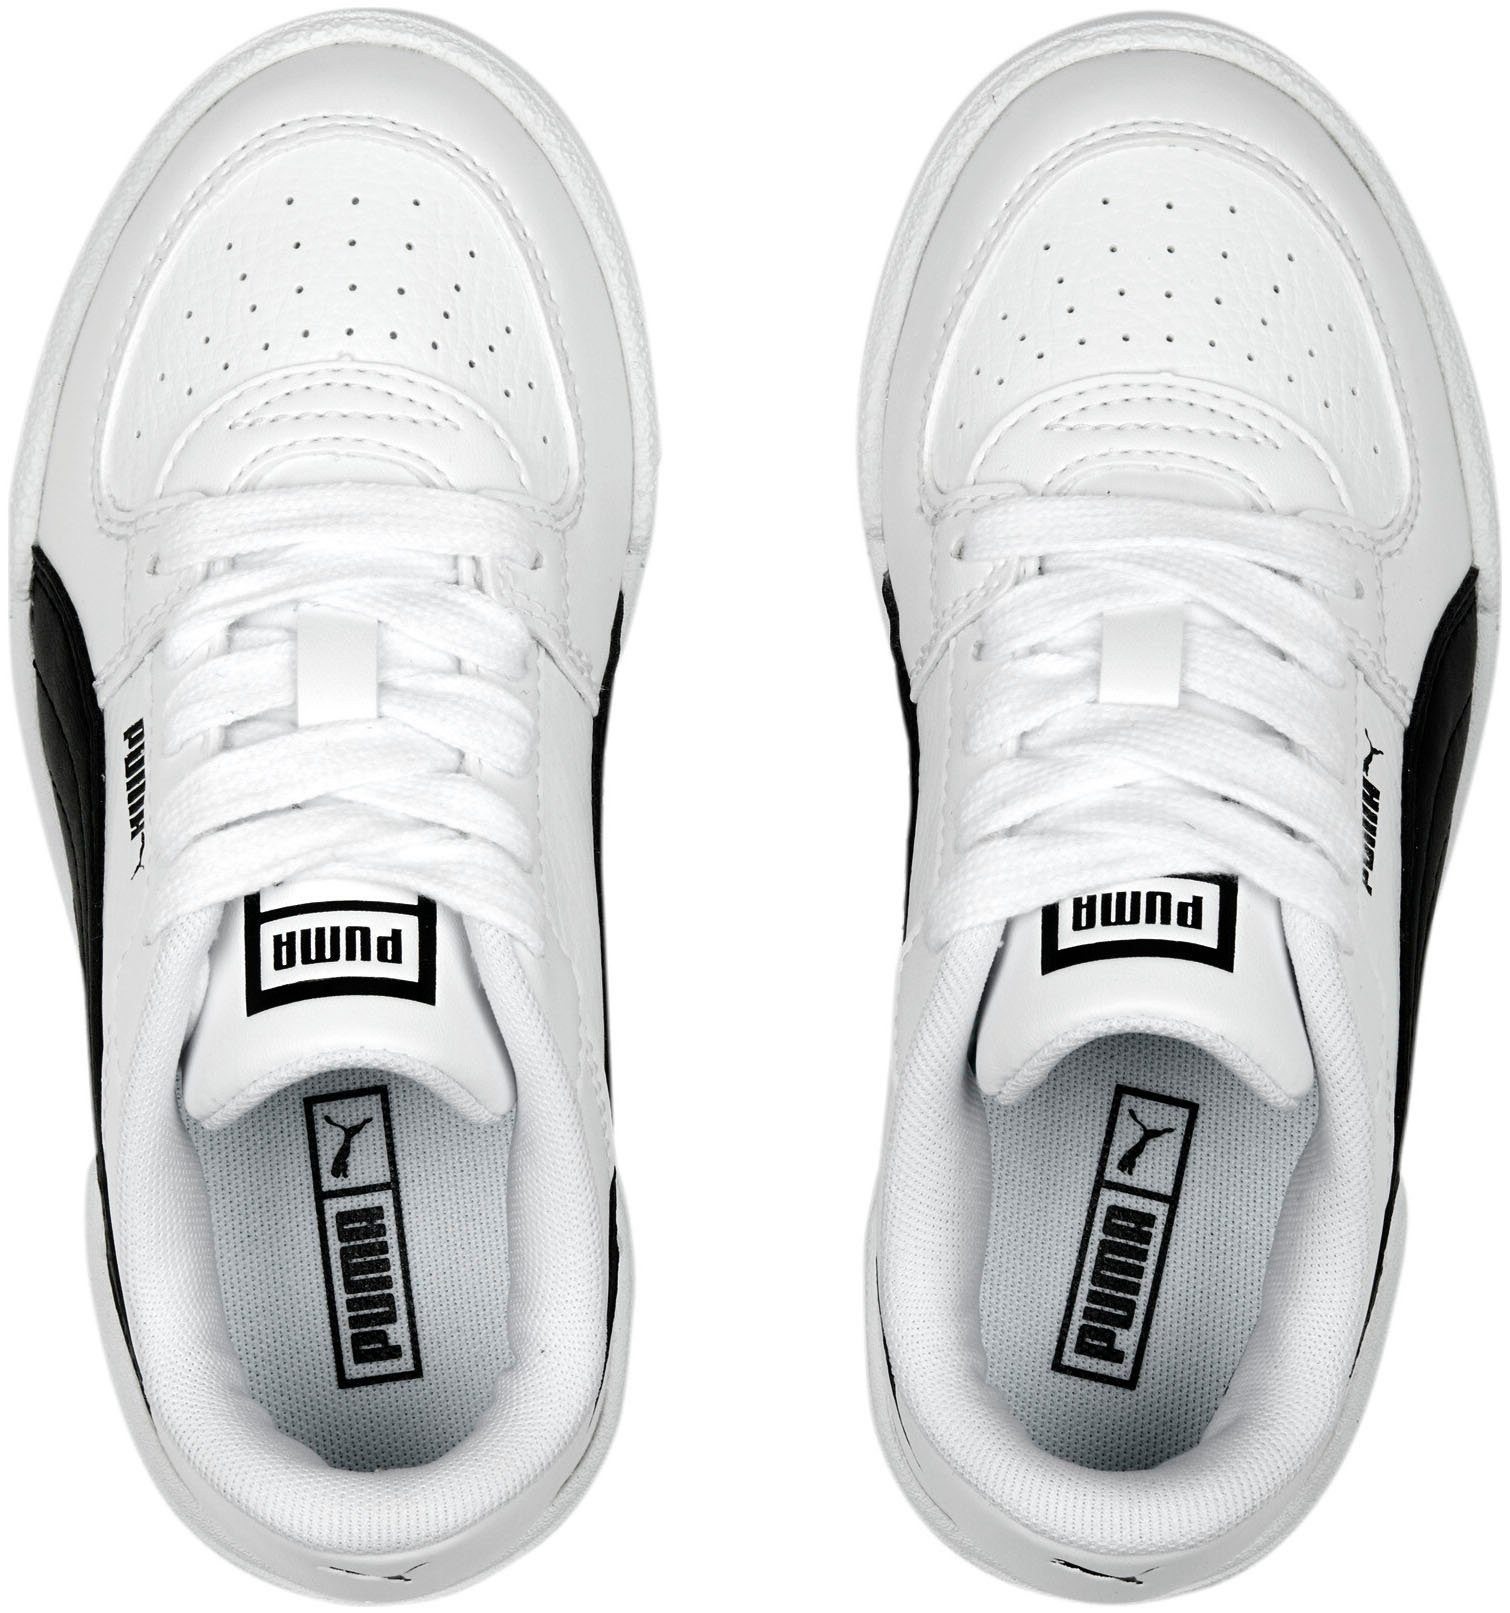 Sneaker White-PUMA Black PRO CLASSIC PS CA PUMA PUMA